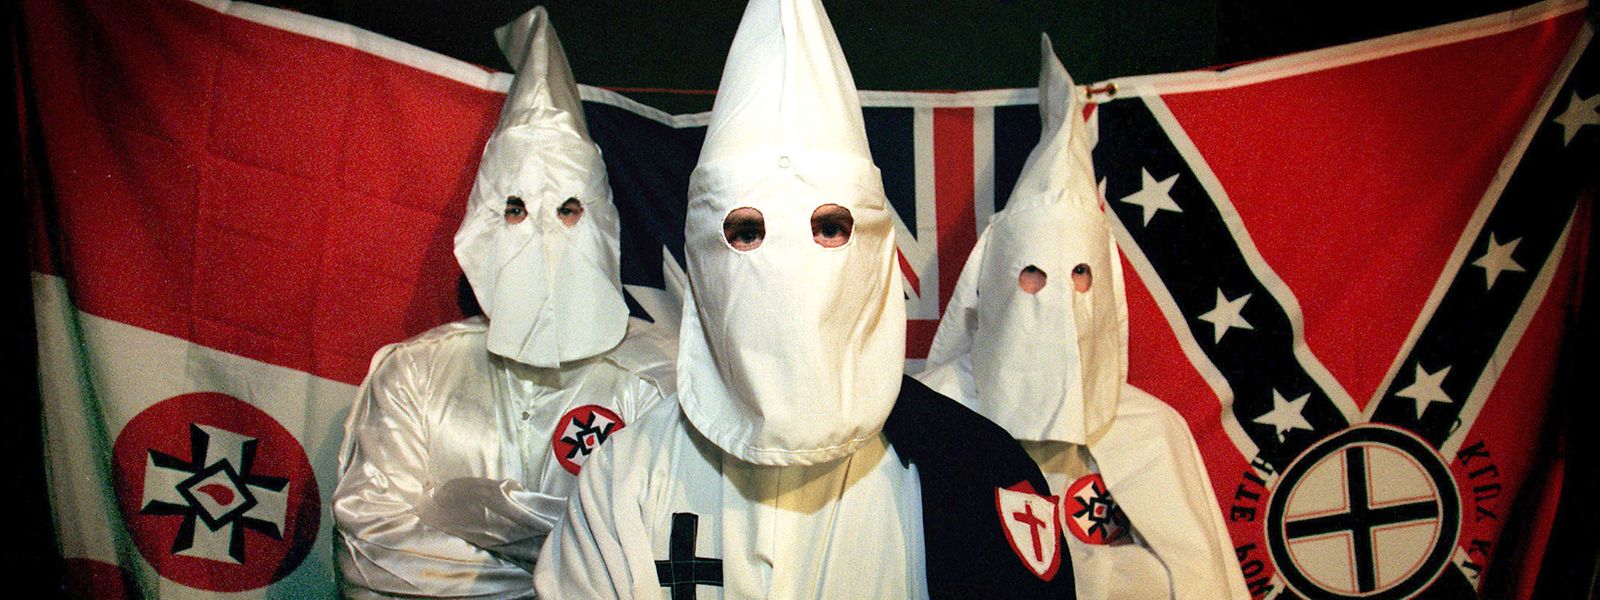 Die wohl bekannteste Gruppierung ist der Ku-Klux-Klan.